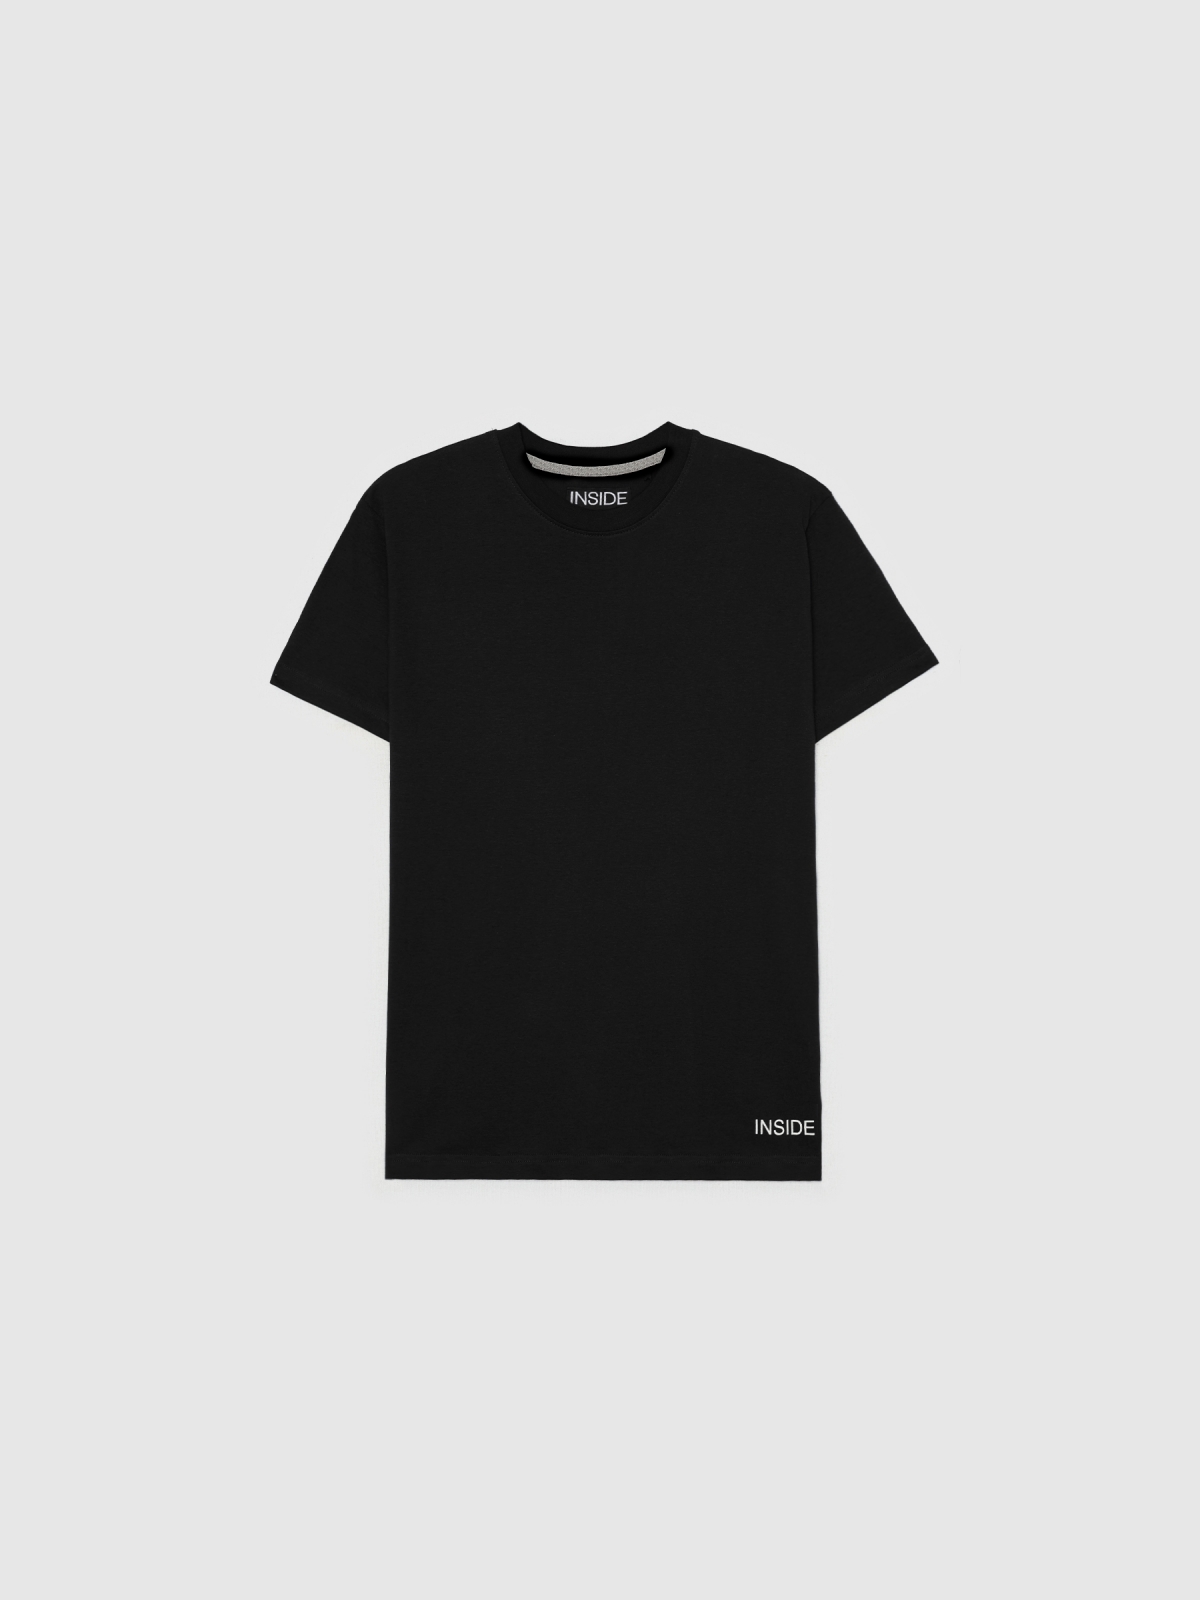  Camiseta básica manga corta negro